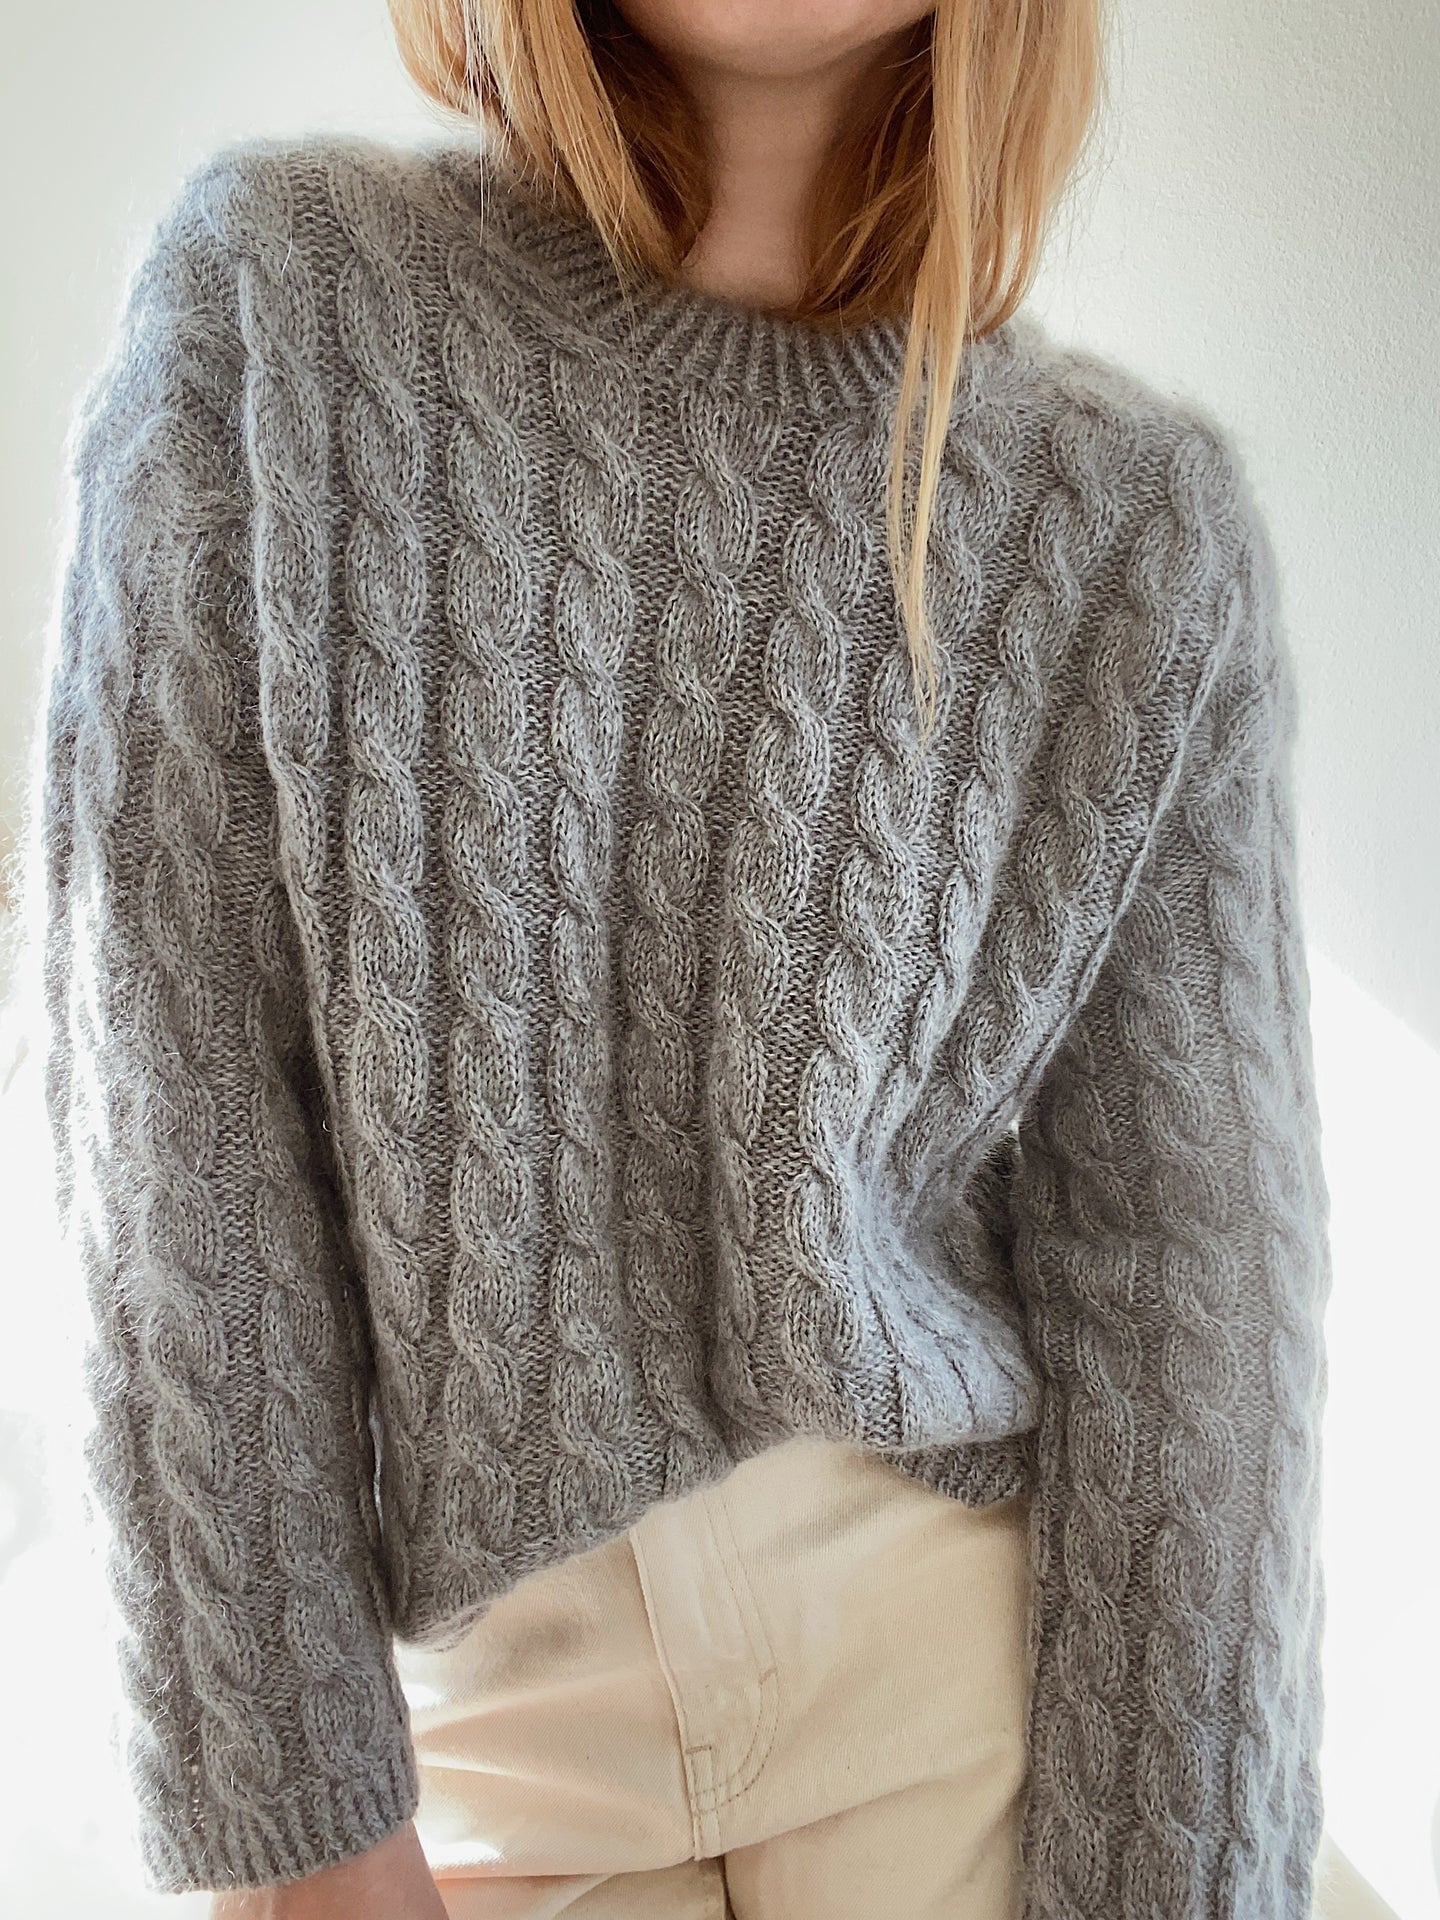 Sweater No. 15 - DEUTSCH